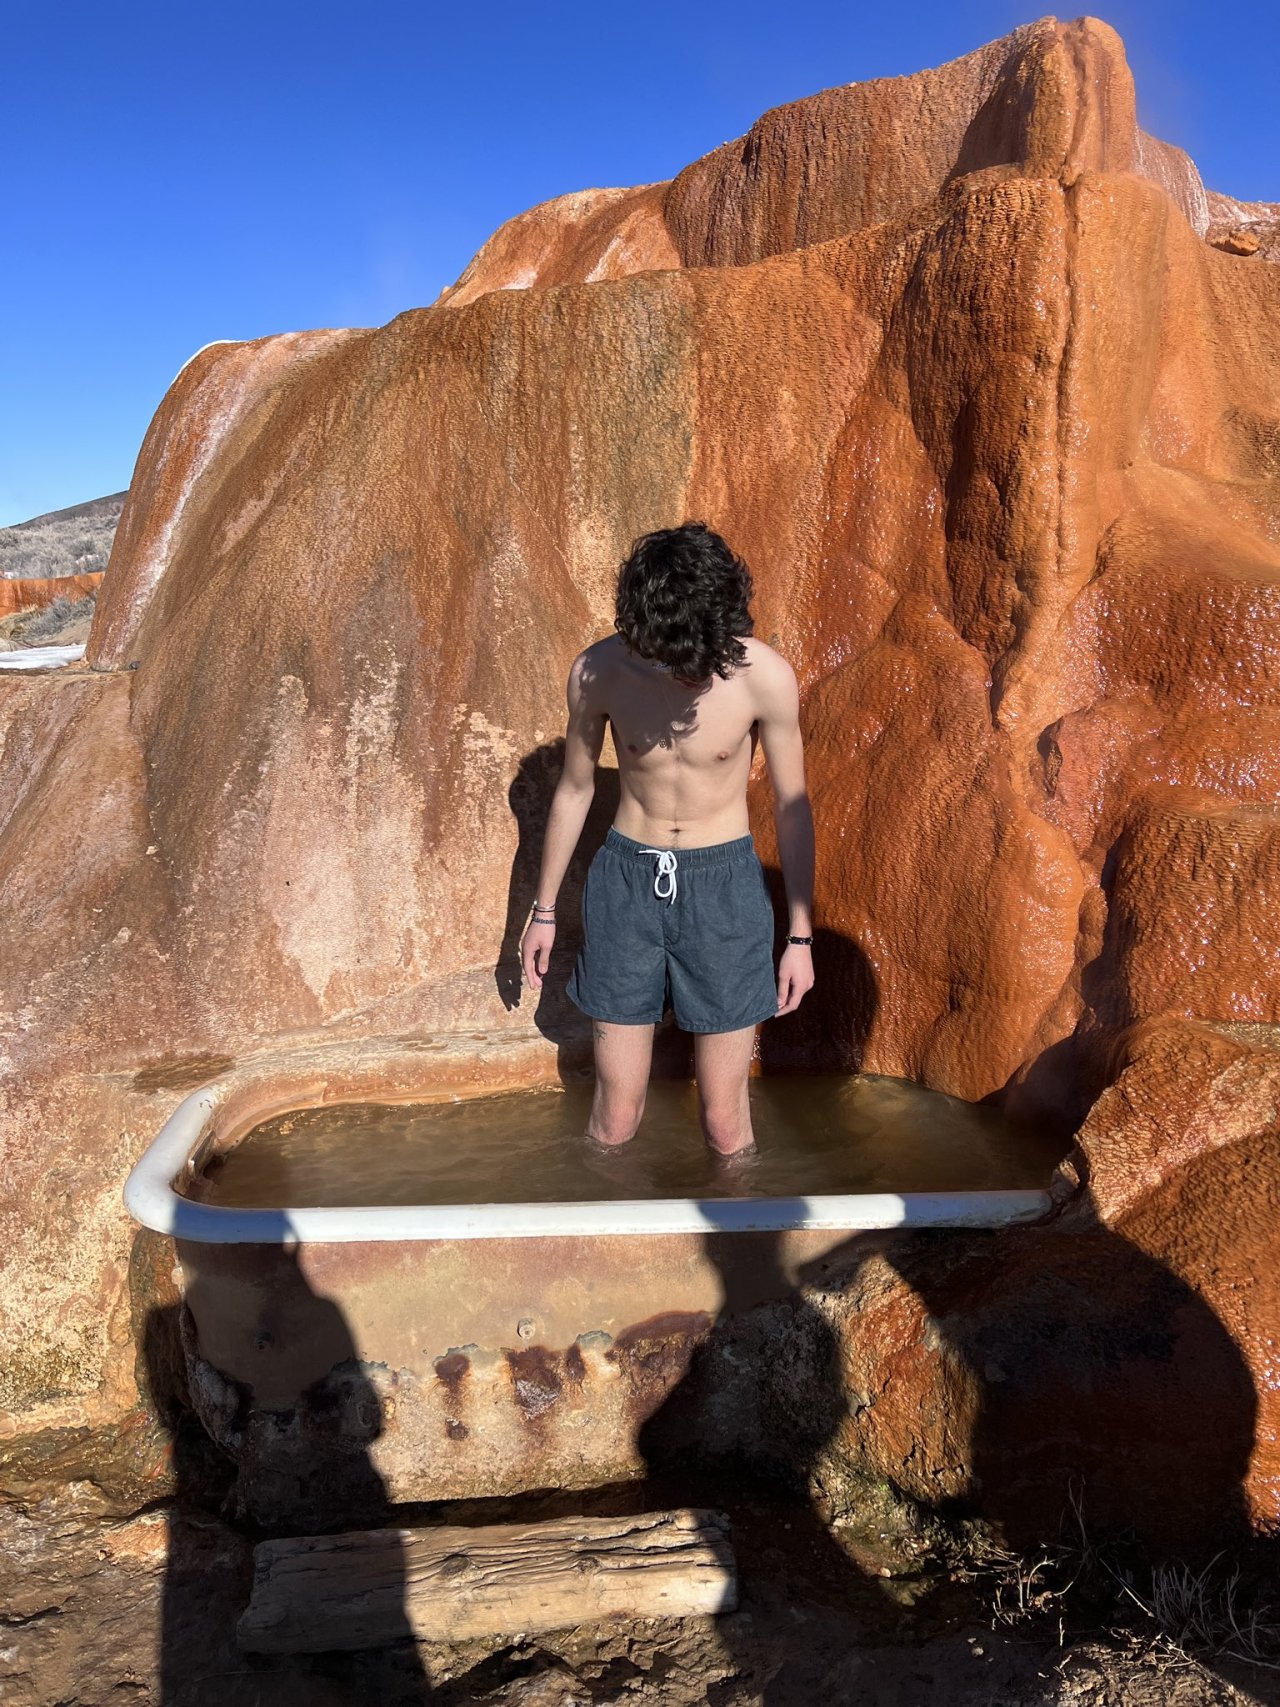 Joshua Rush enjoyed the Mystic Hot Springs in Utah today. #Andi Mack#Joshua Rush